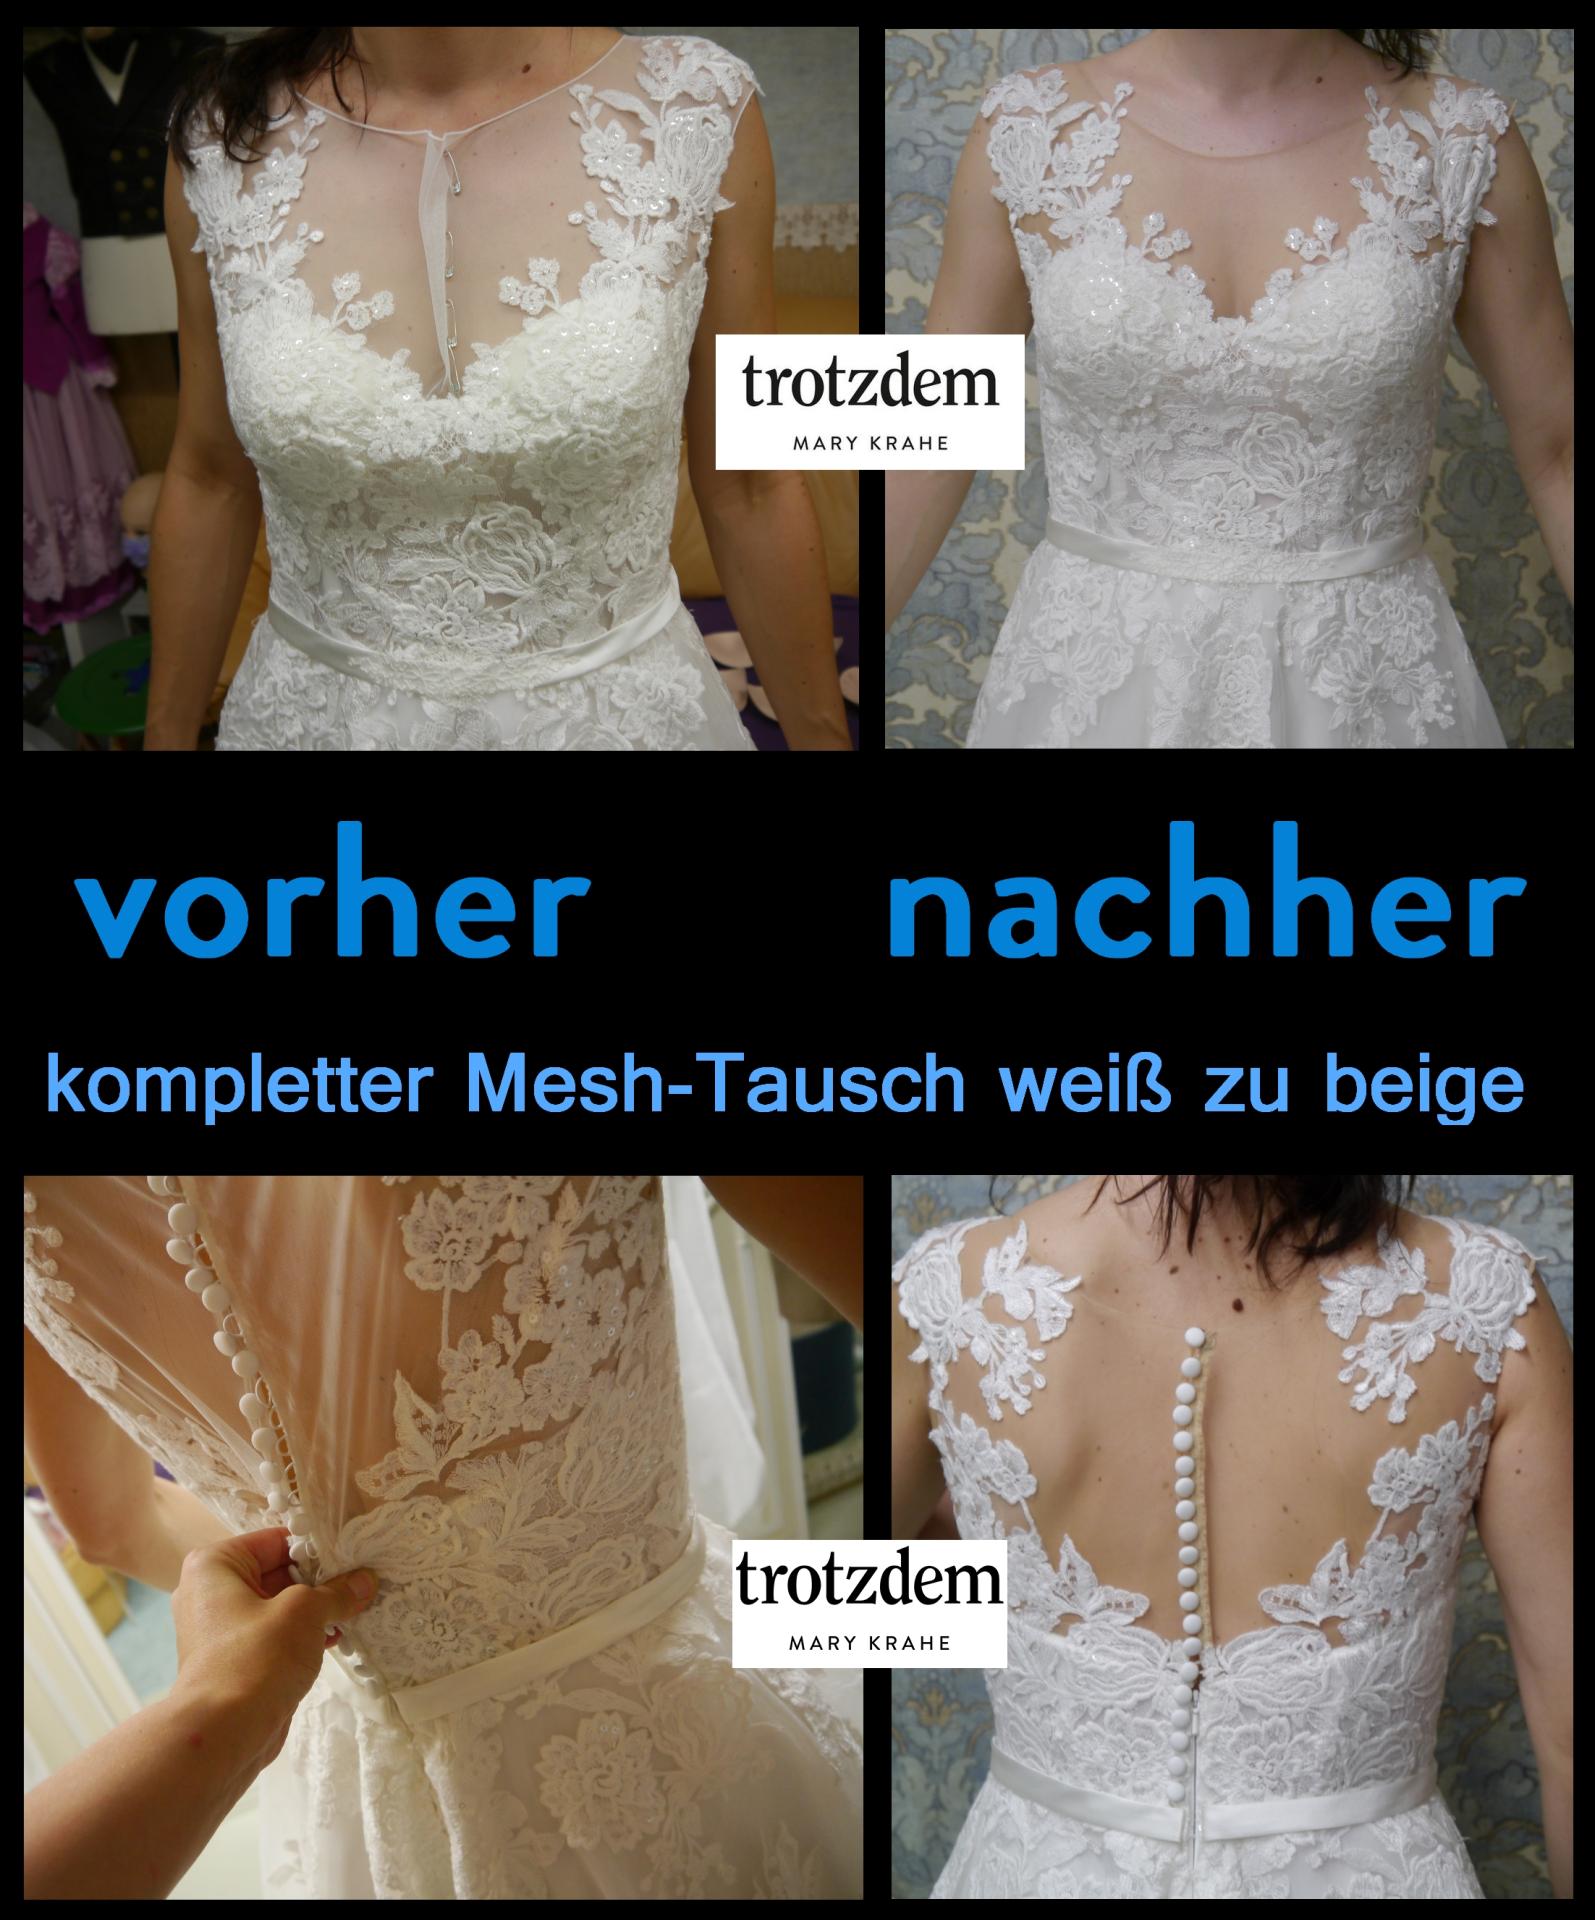 Wie teuer ist es ein Brautkleid ändern zu lassen?